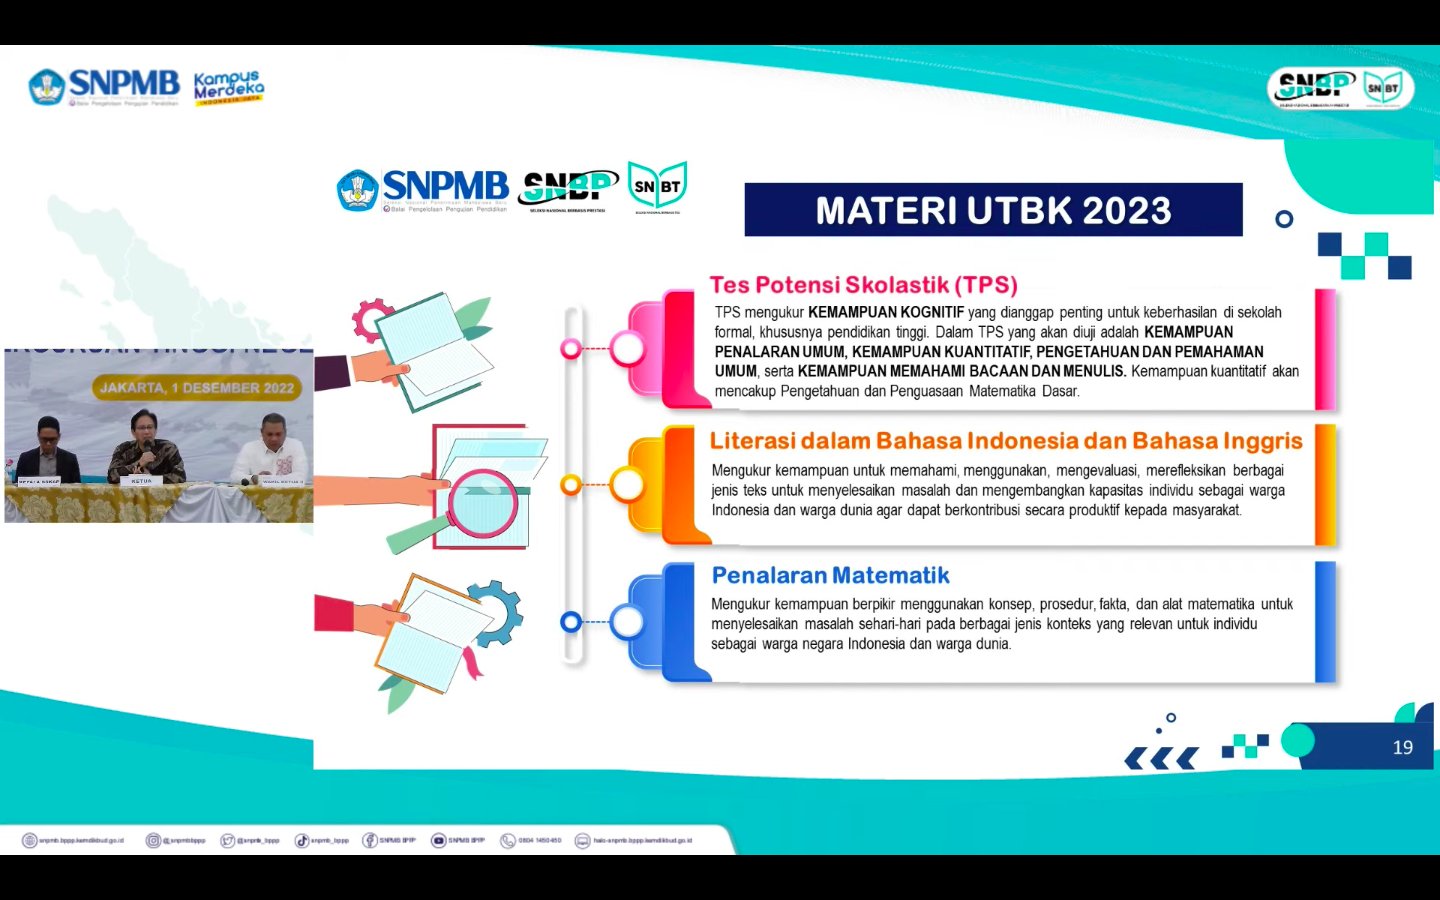 Materi yang diujikan pada UTBK - SNBT 2023